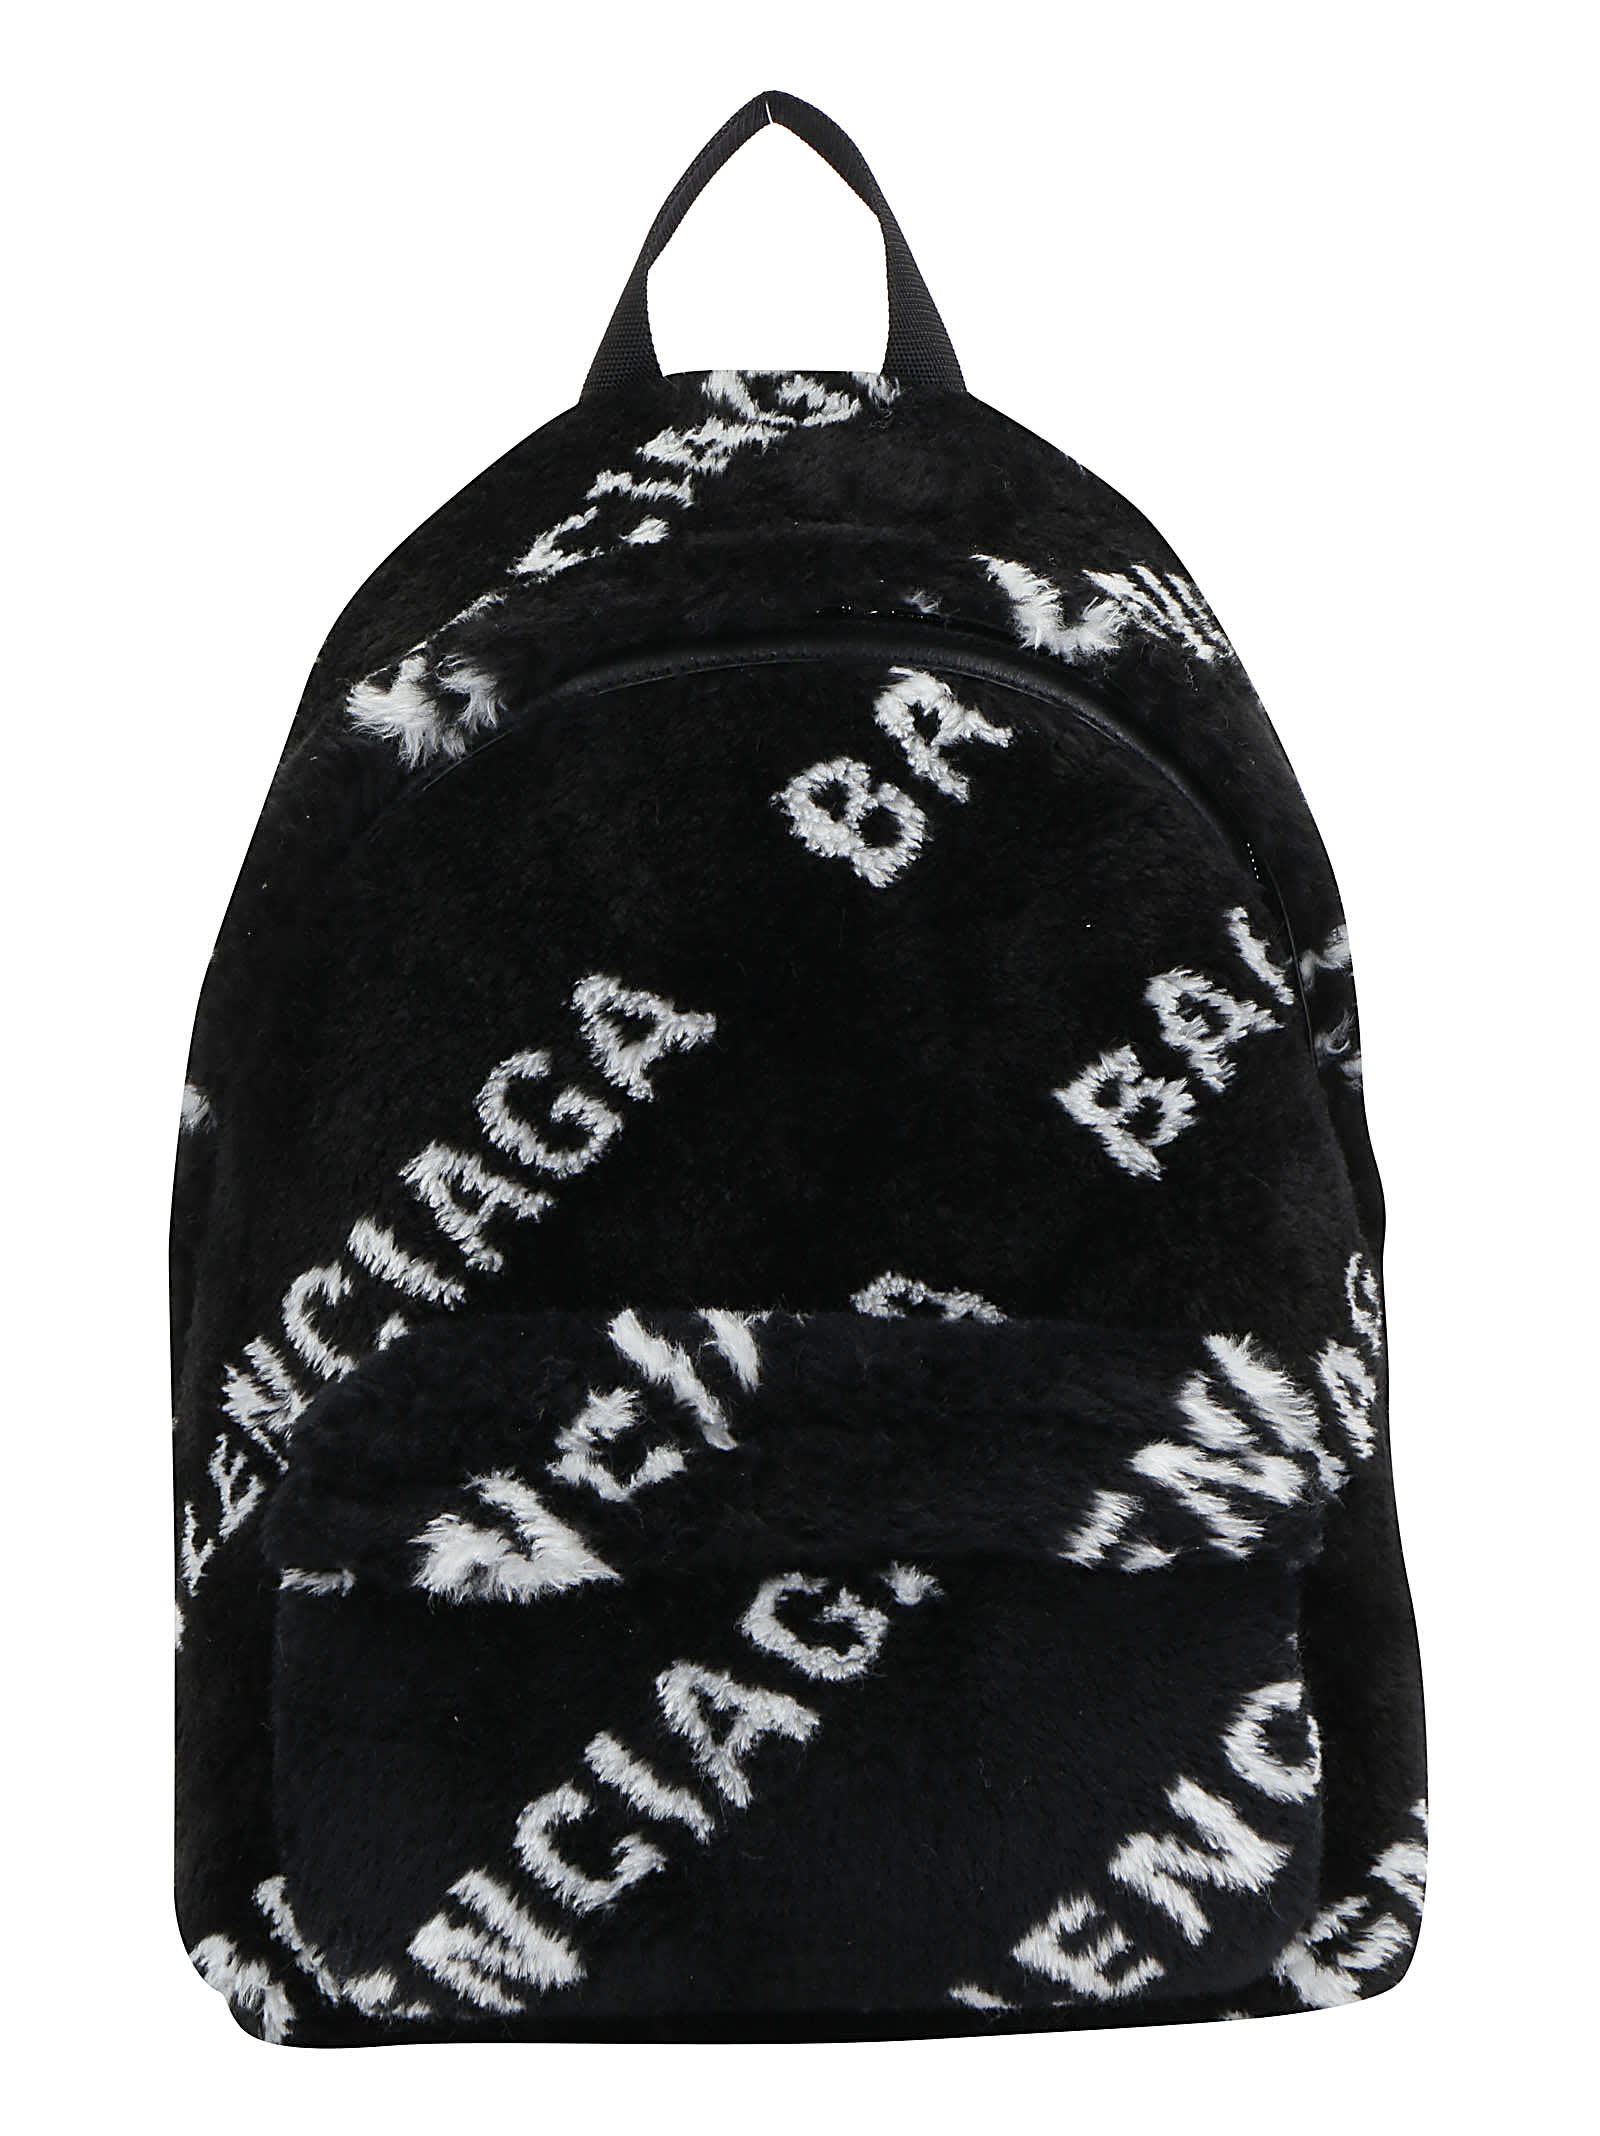 Balenciaga Backpack In Black/white